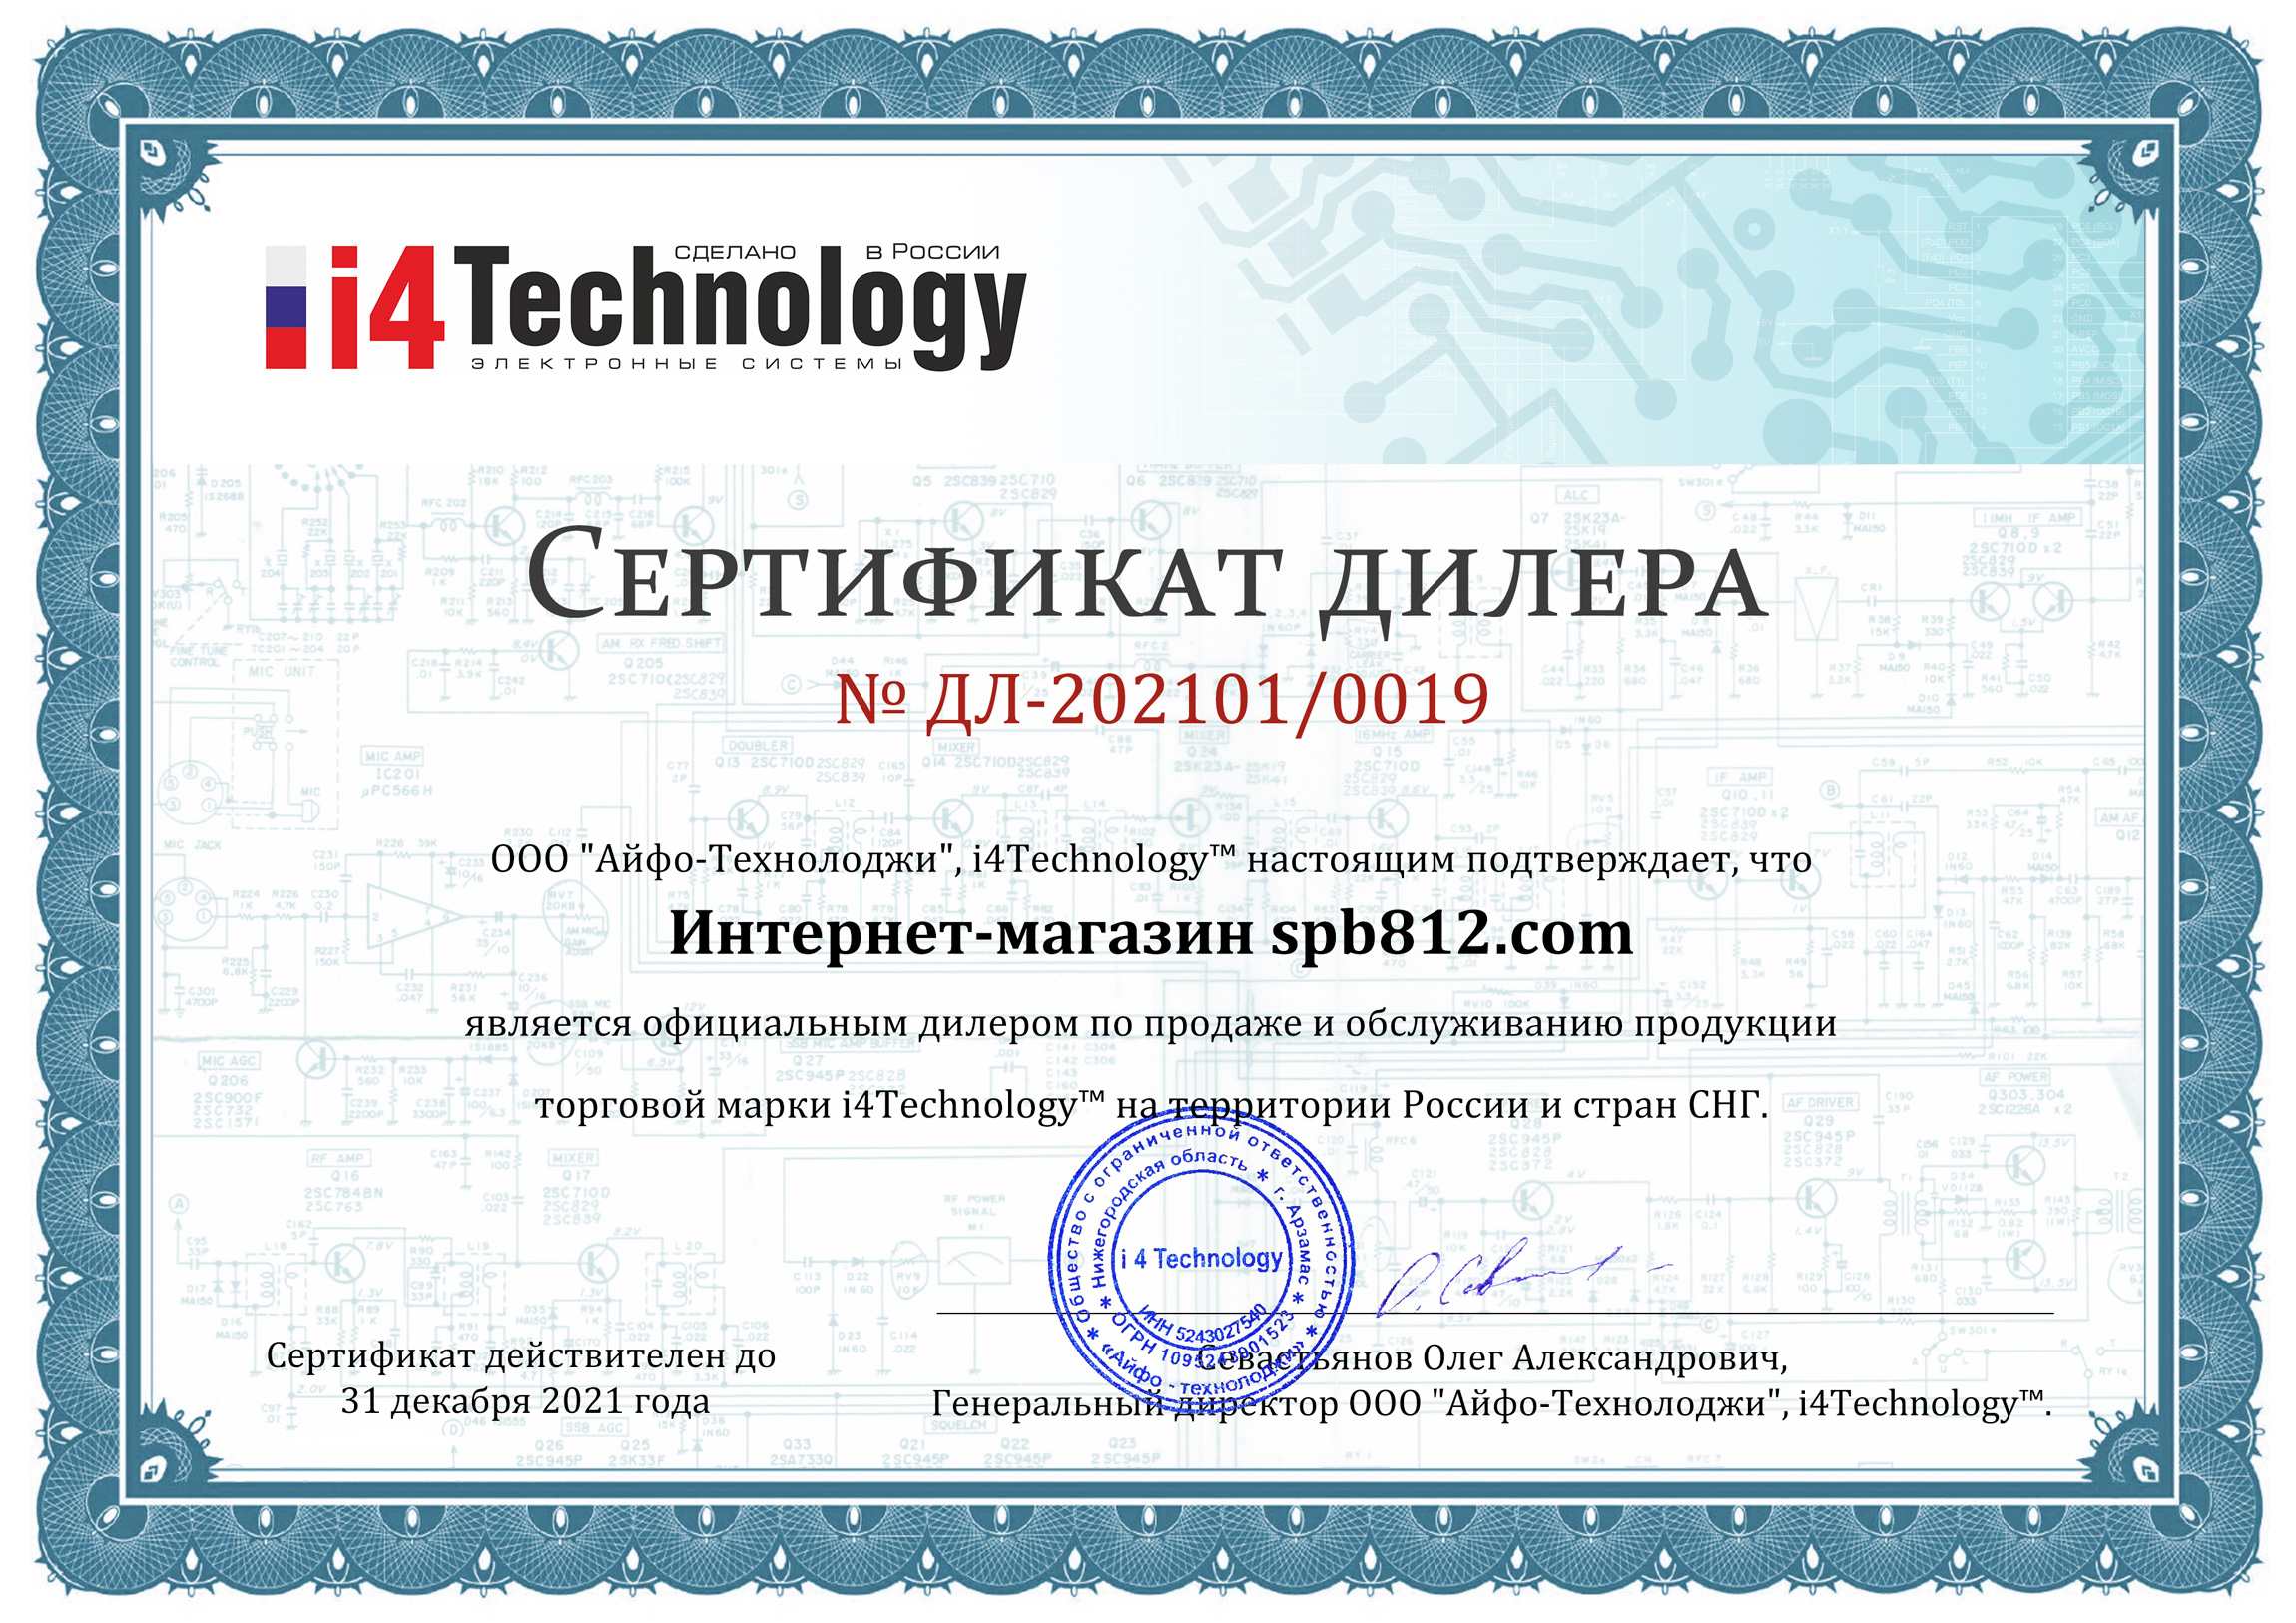 Наш магазин является официальным дилером компании i4Technology и имеет соответствующий сертификат (нажмите для увеличения)